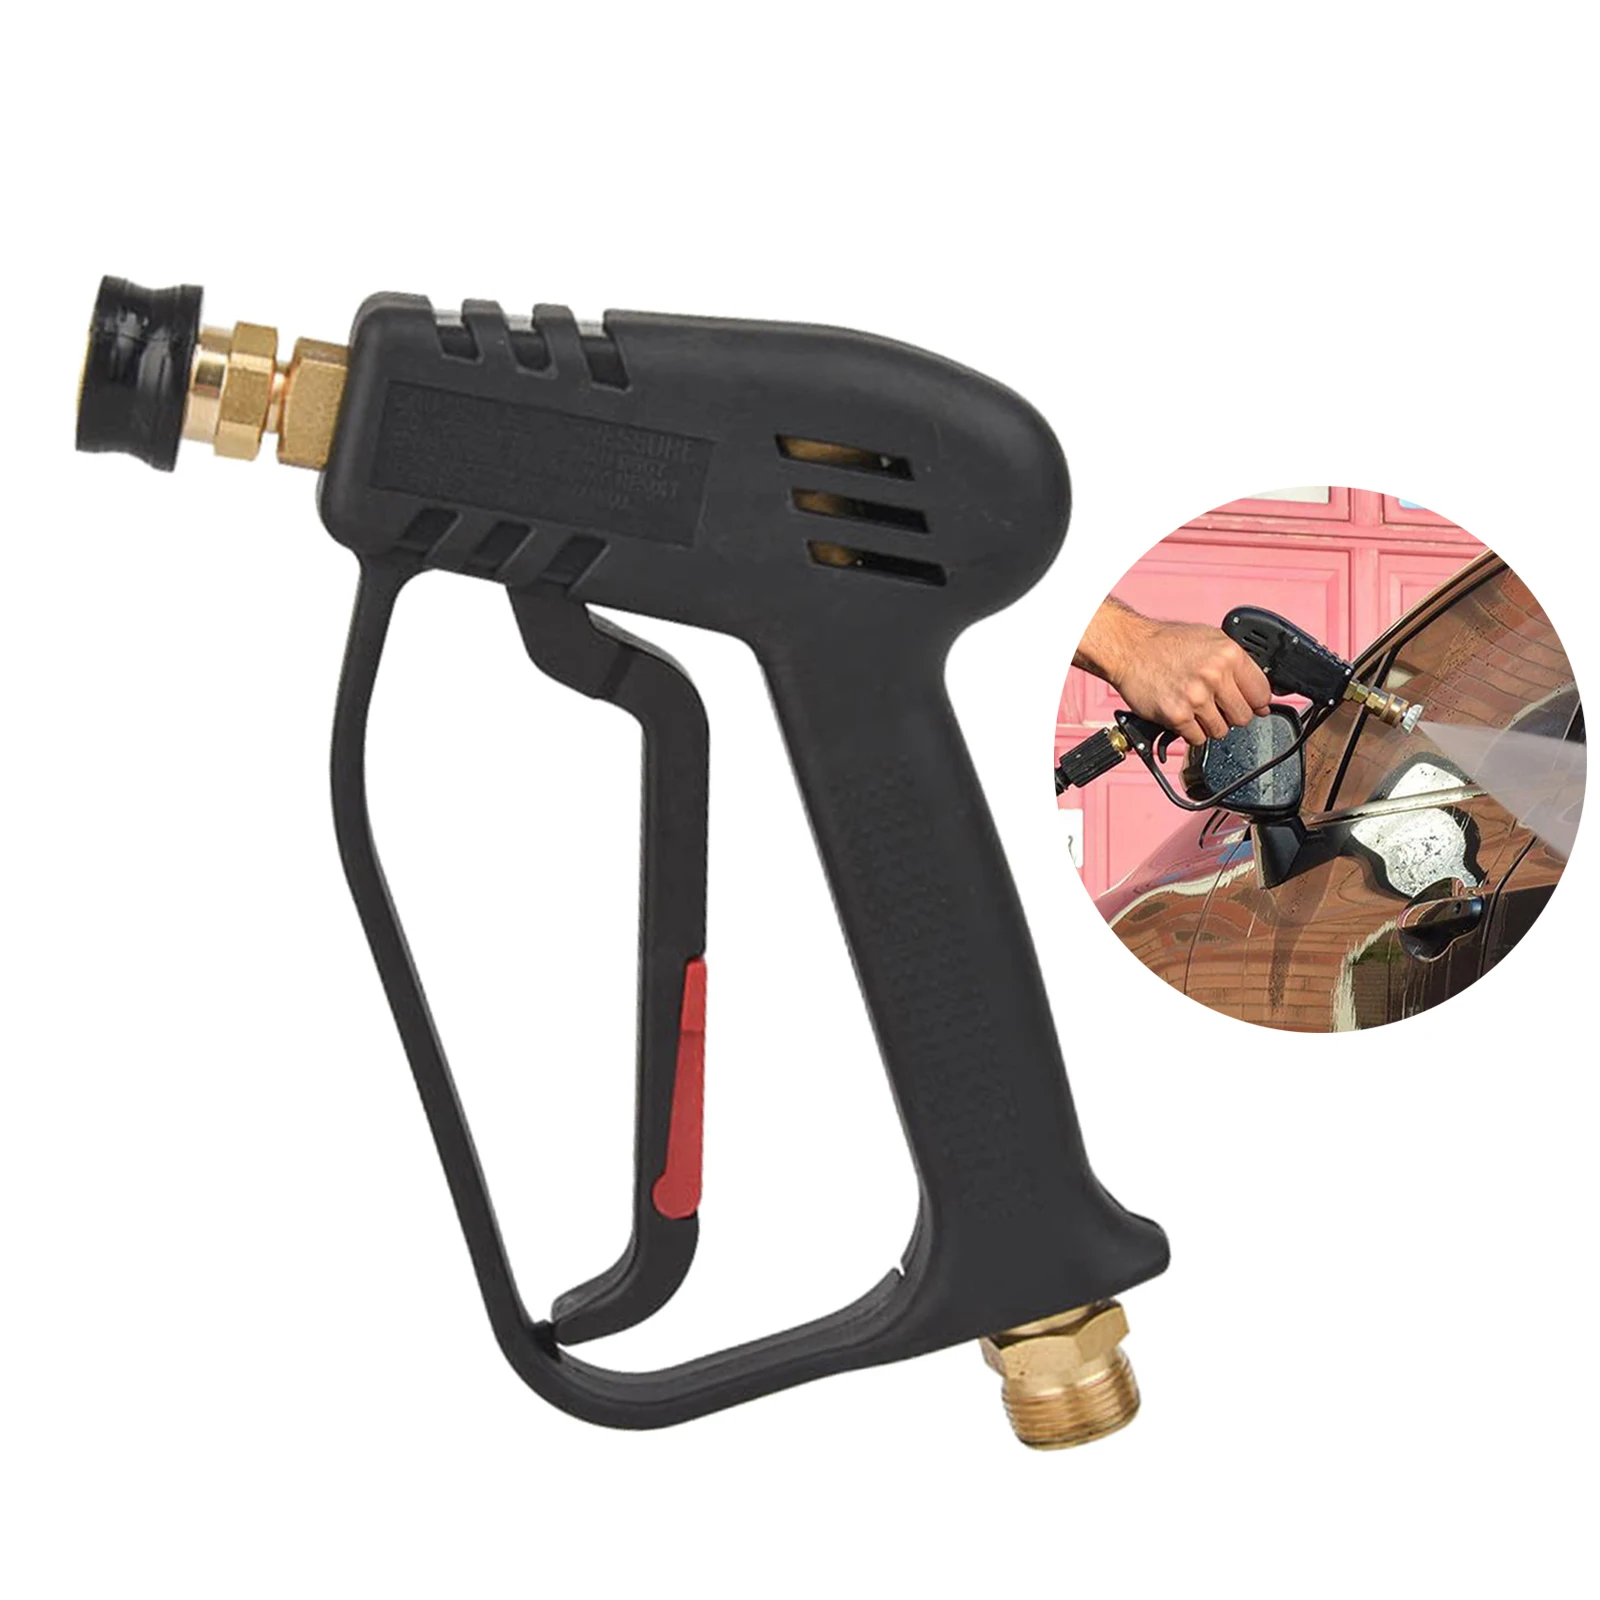 Replacement Pressure Washer Gun High Pressure Water Spray Gun Pistol 4000psi with 1/4